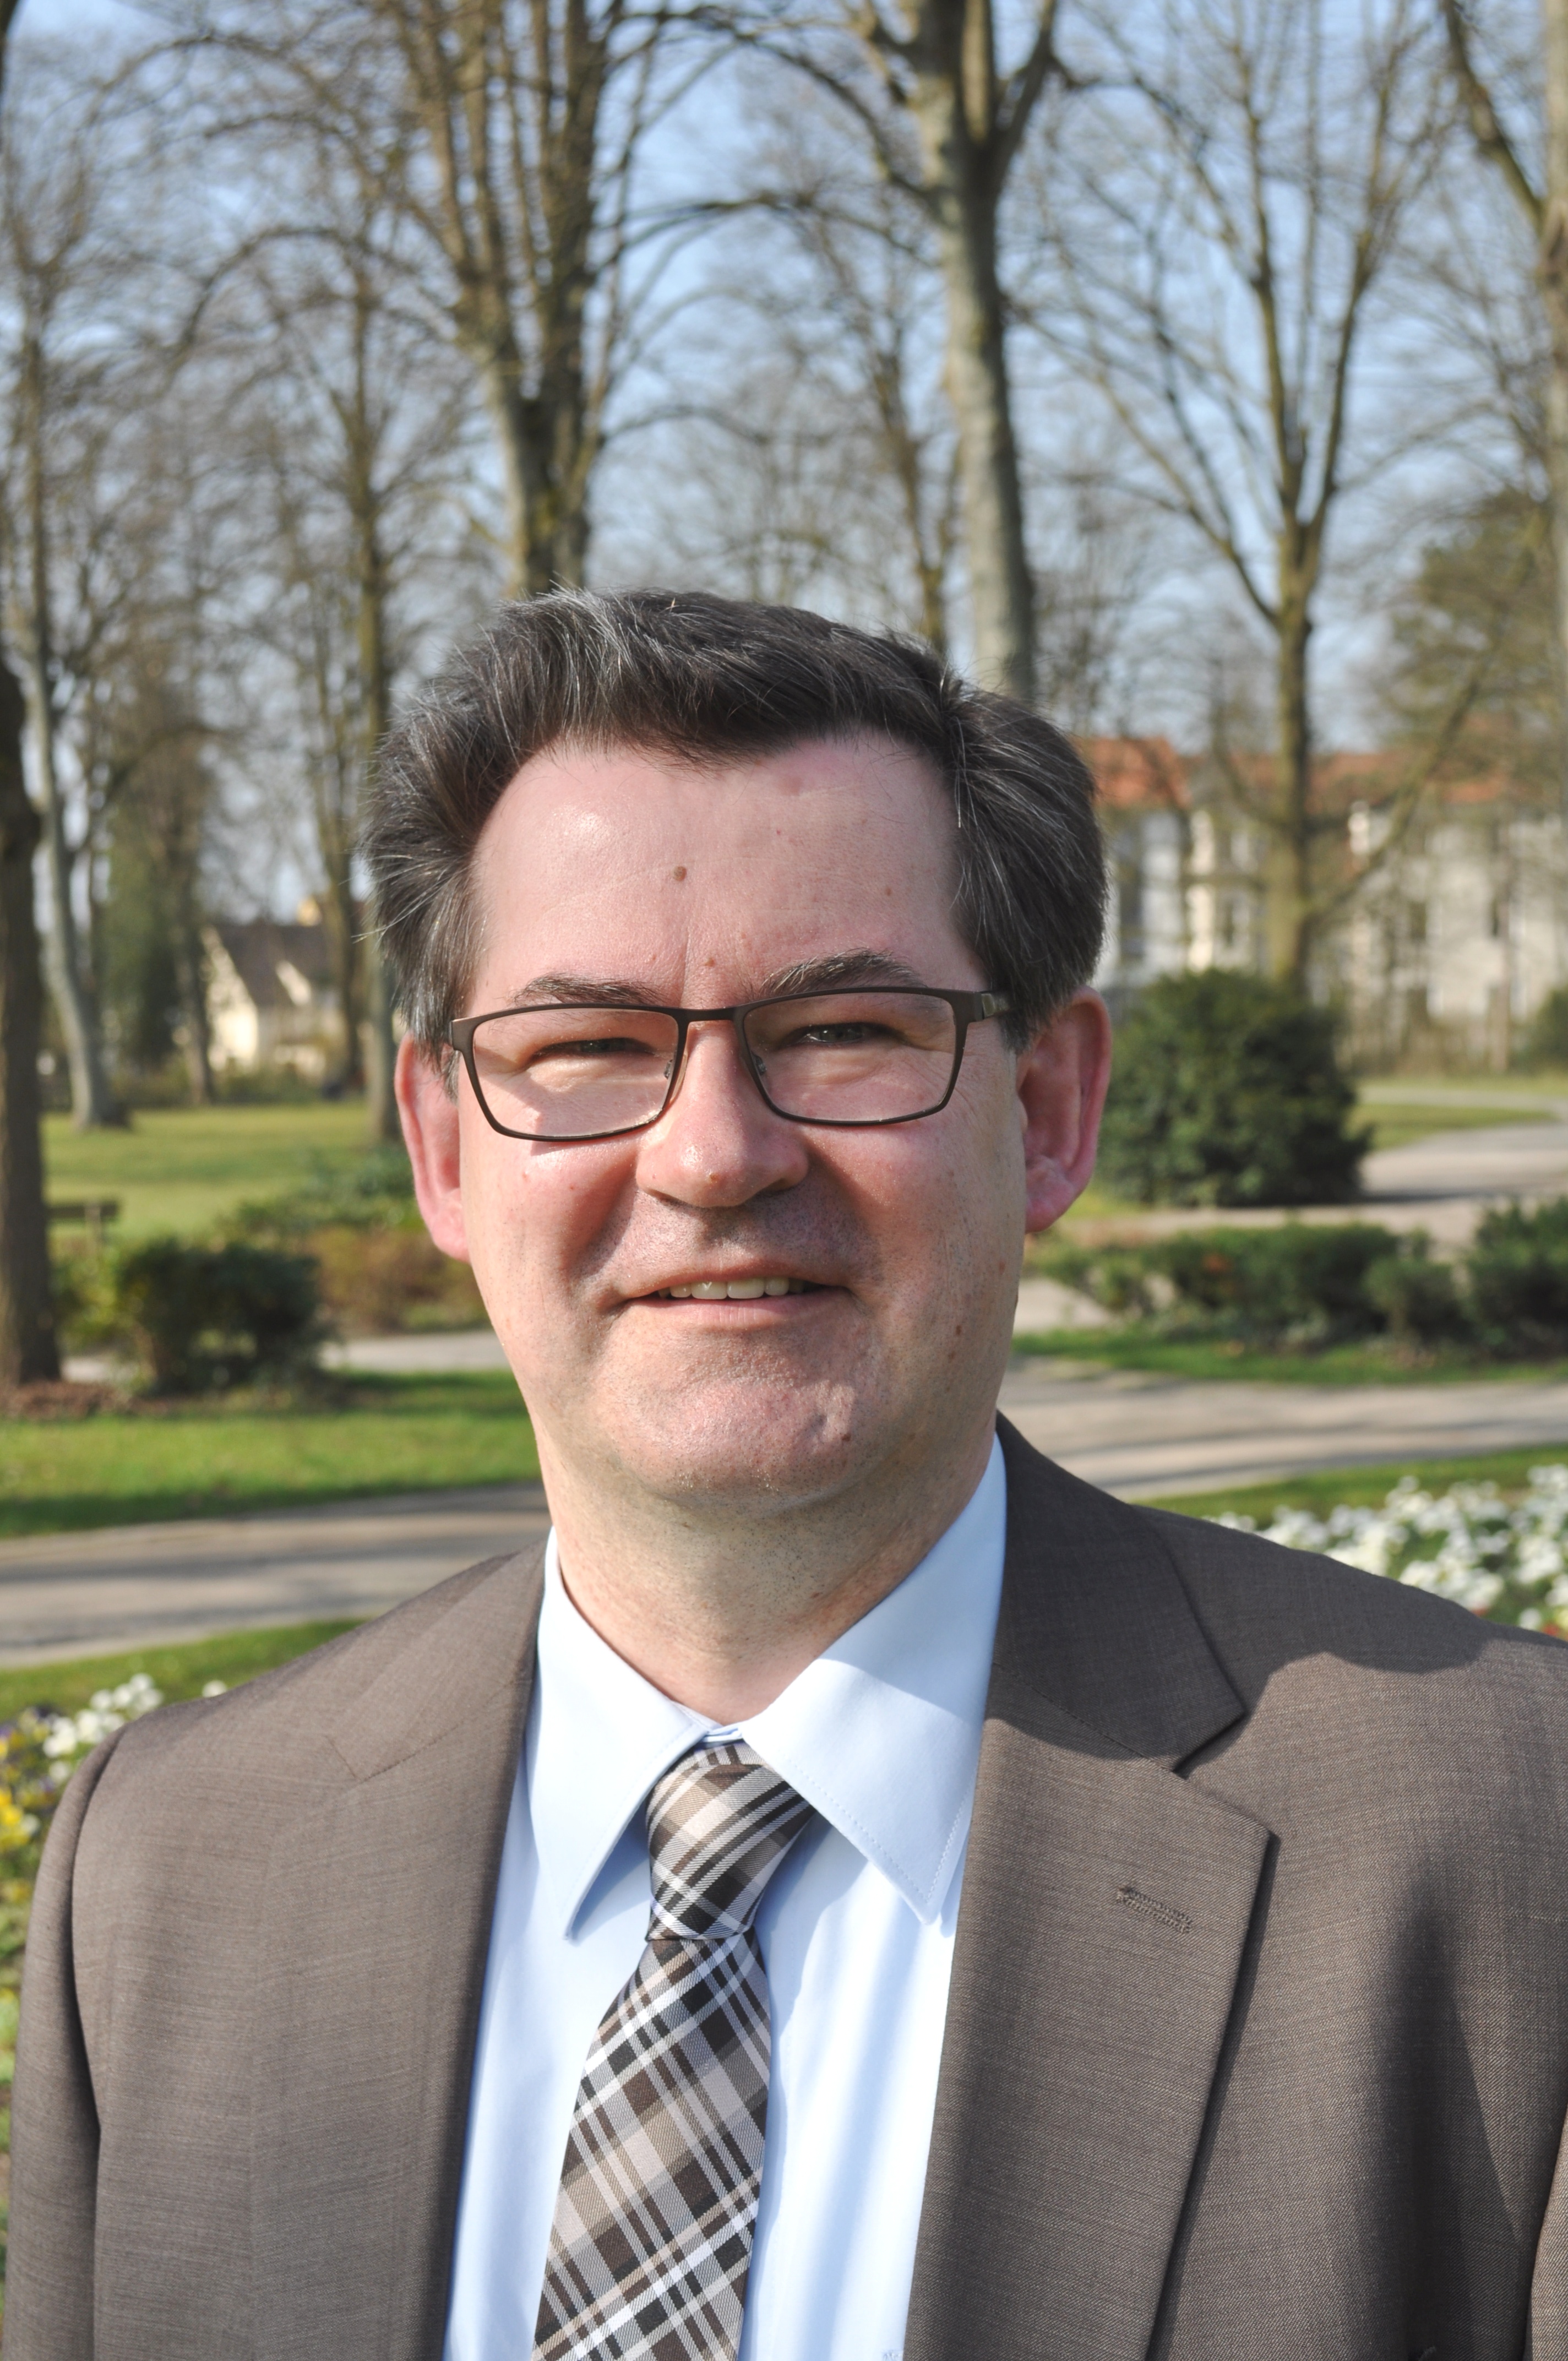 Herzlich Willkommen bei der CDU Bad Lippspringe - Christian Rodemeyer stellt ...